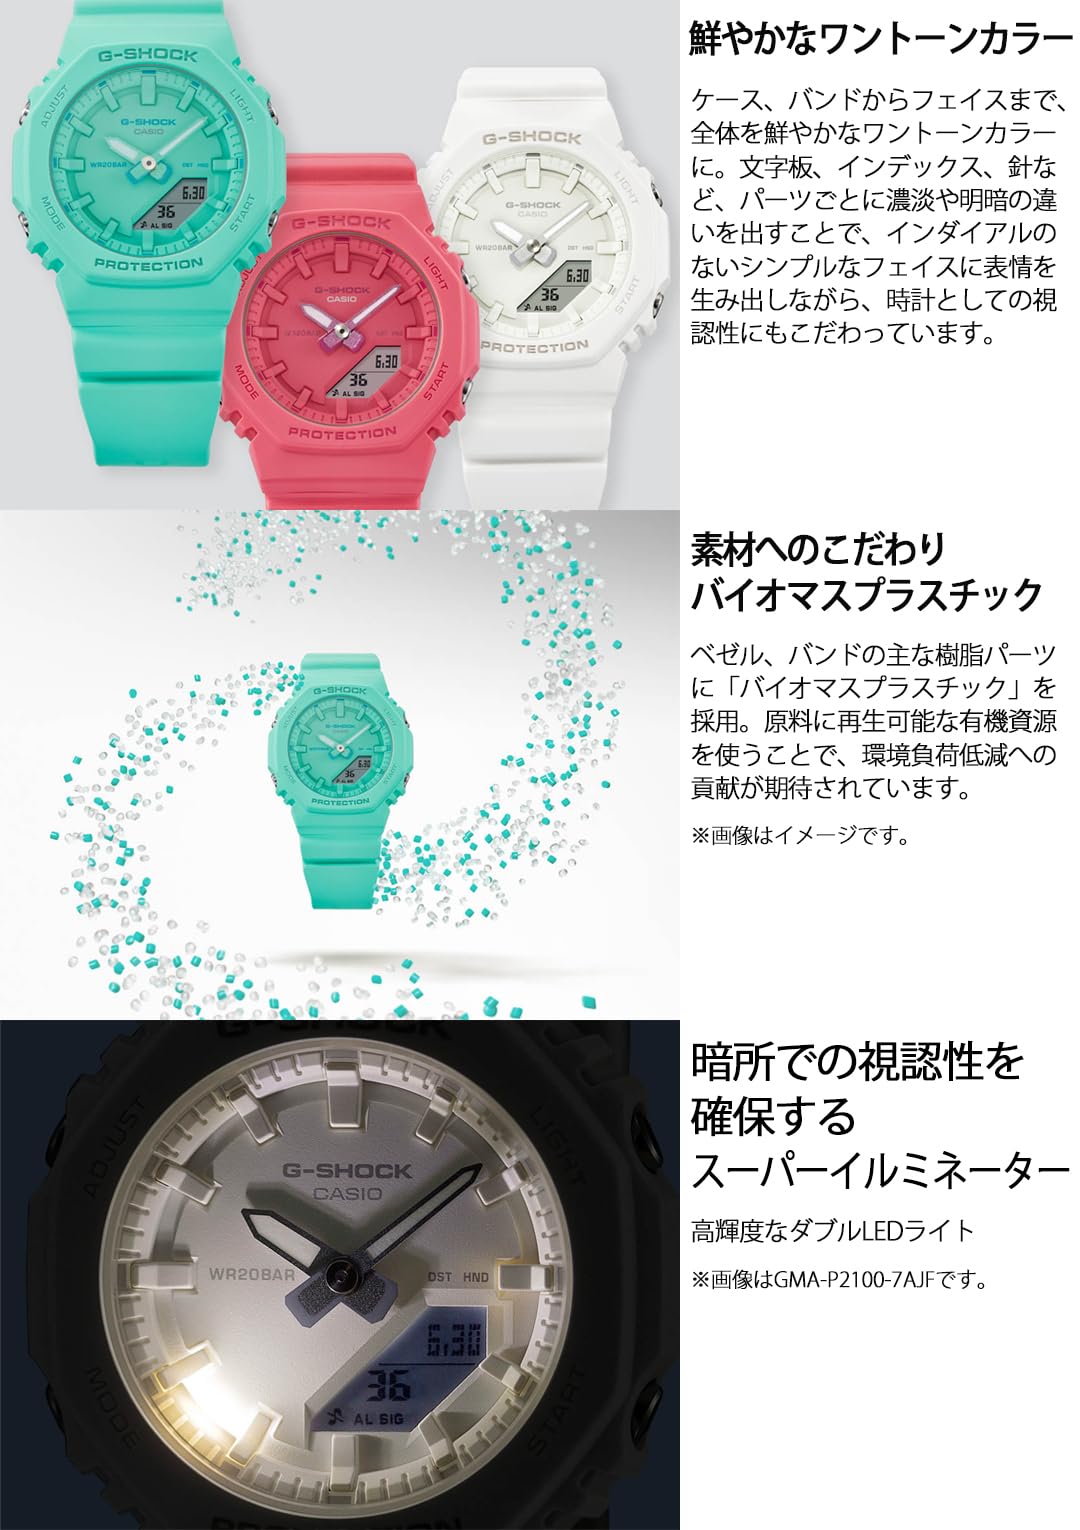 ジーショック [カシオ] 腕時計 【国内正規品】ミッドサイズモデルバイオマスプラスチック採用 GMA-P2100-2AJF レディース ターコイズ - BanzaiHobby